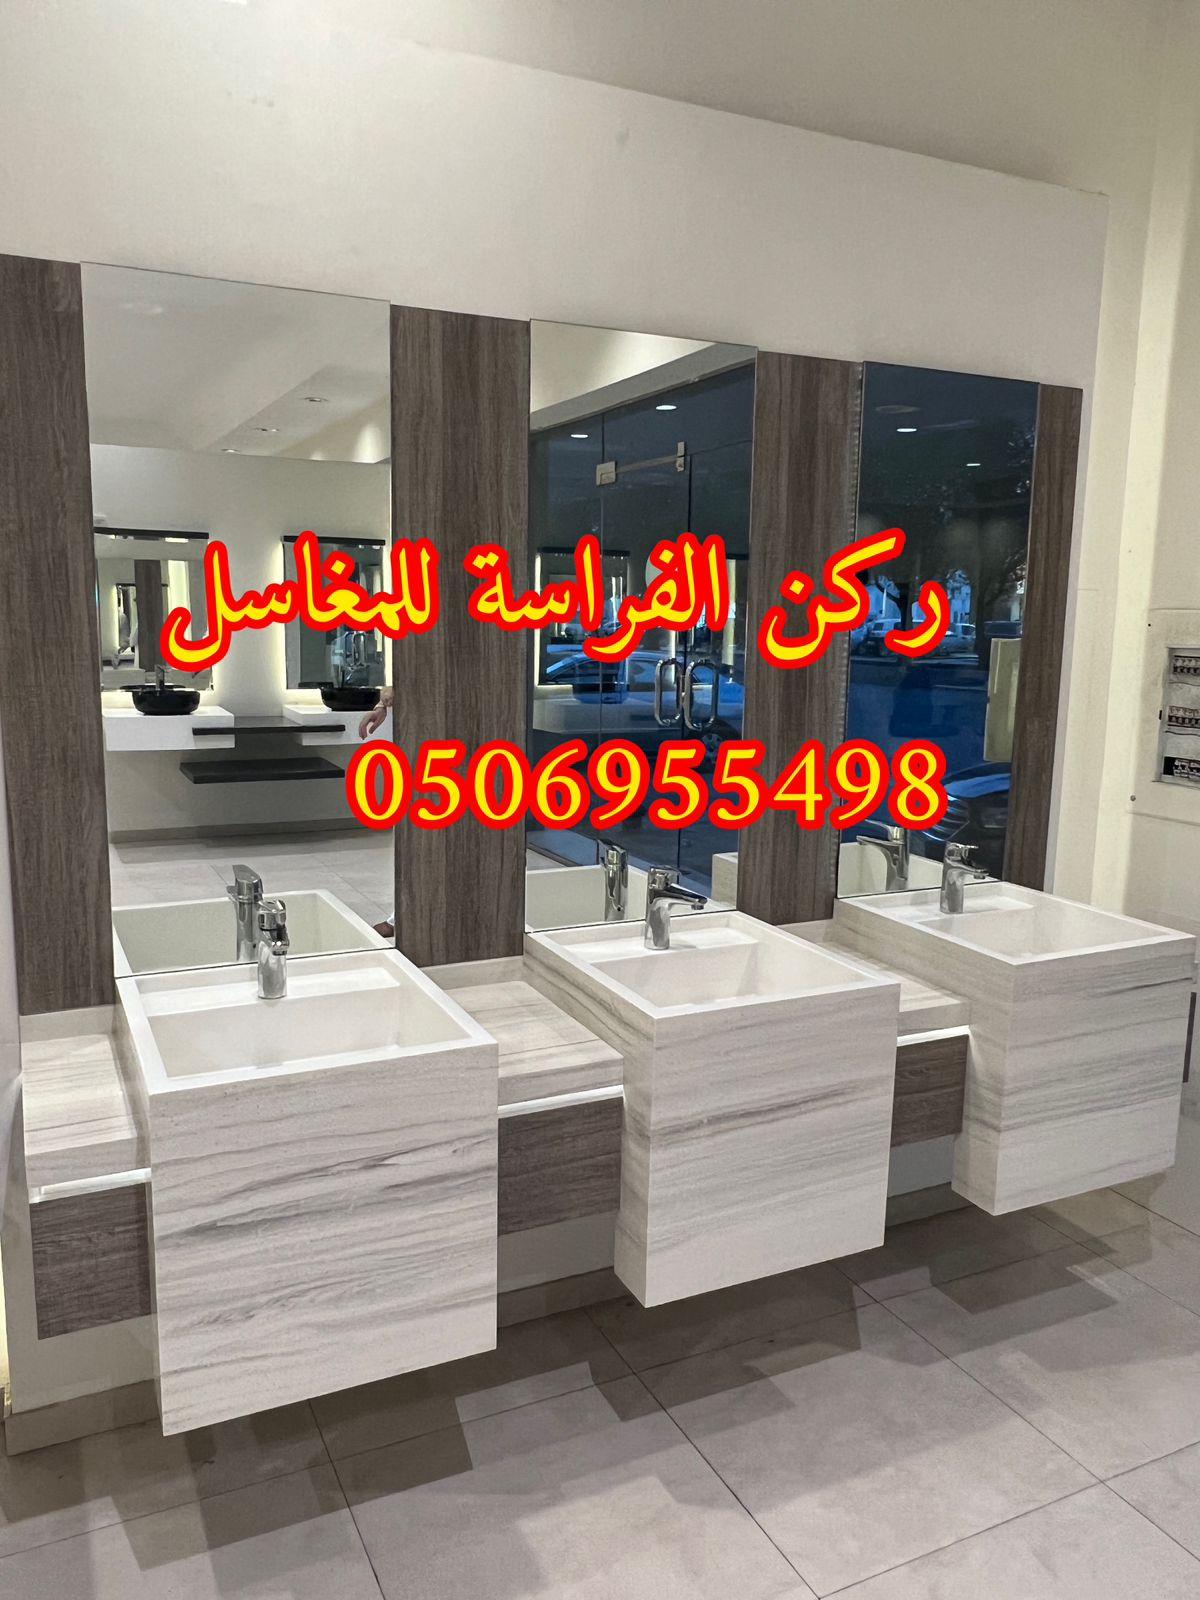 الرياض - احواض مغاسل رخام في الرياض,0506955498 718913159